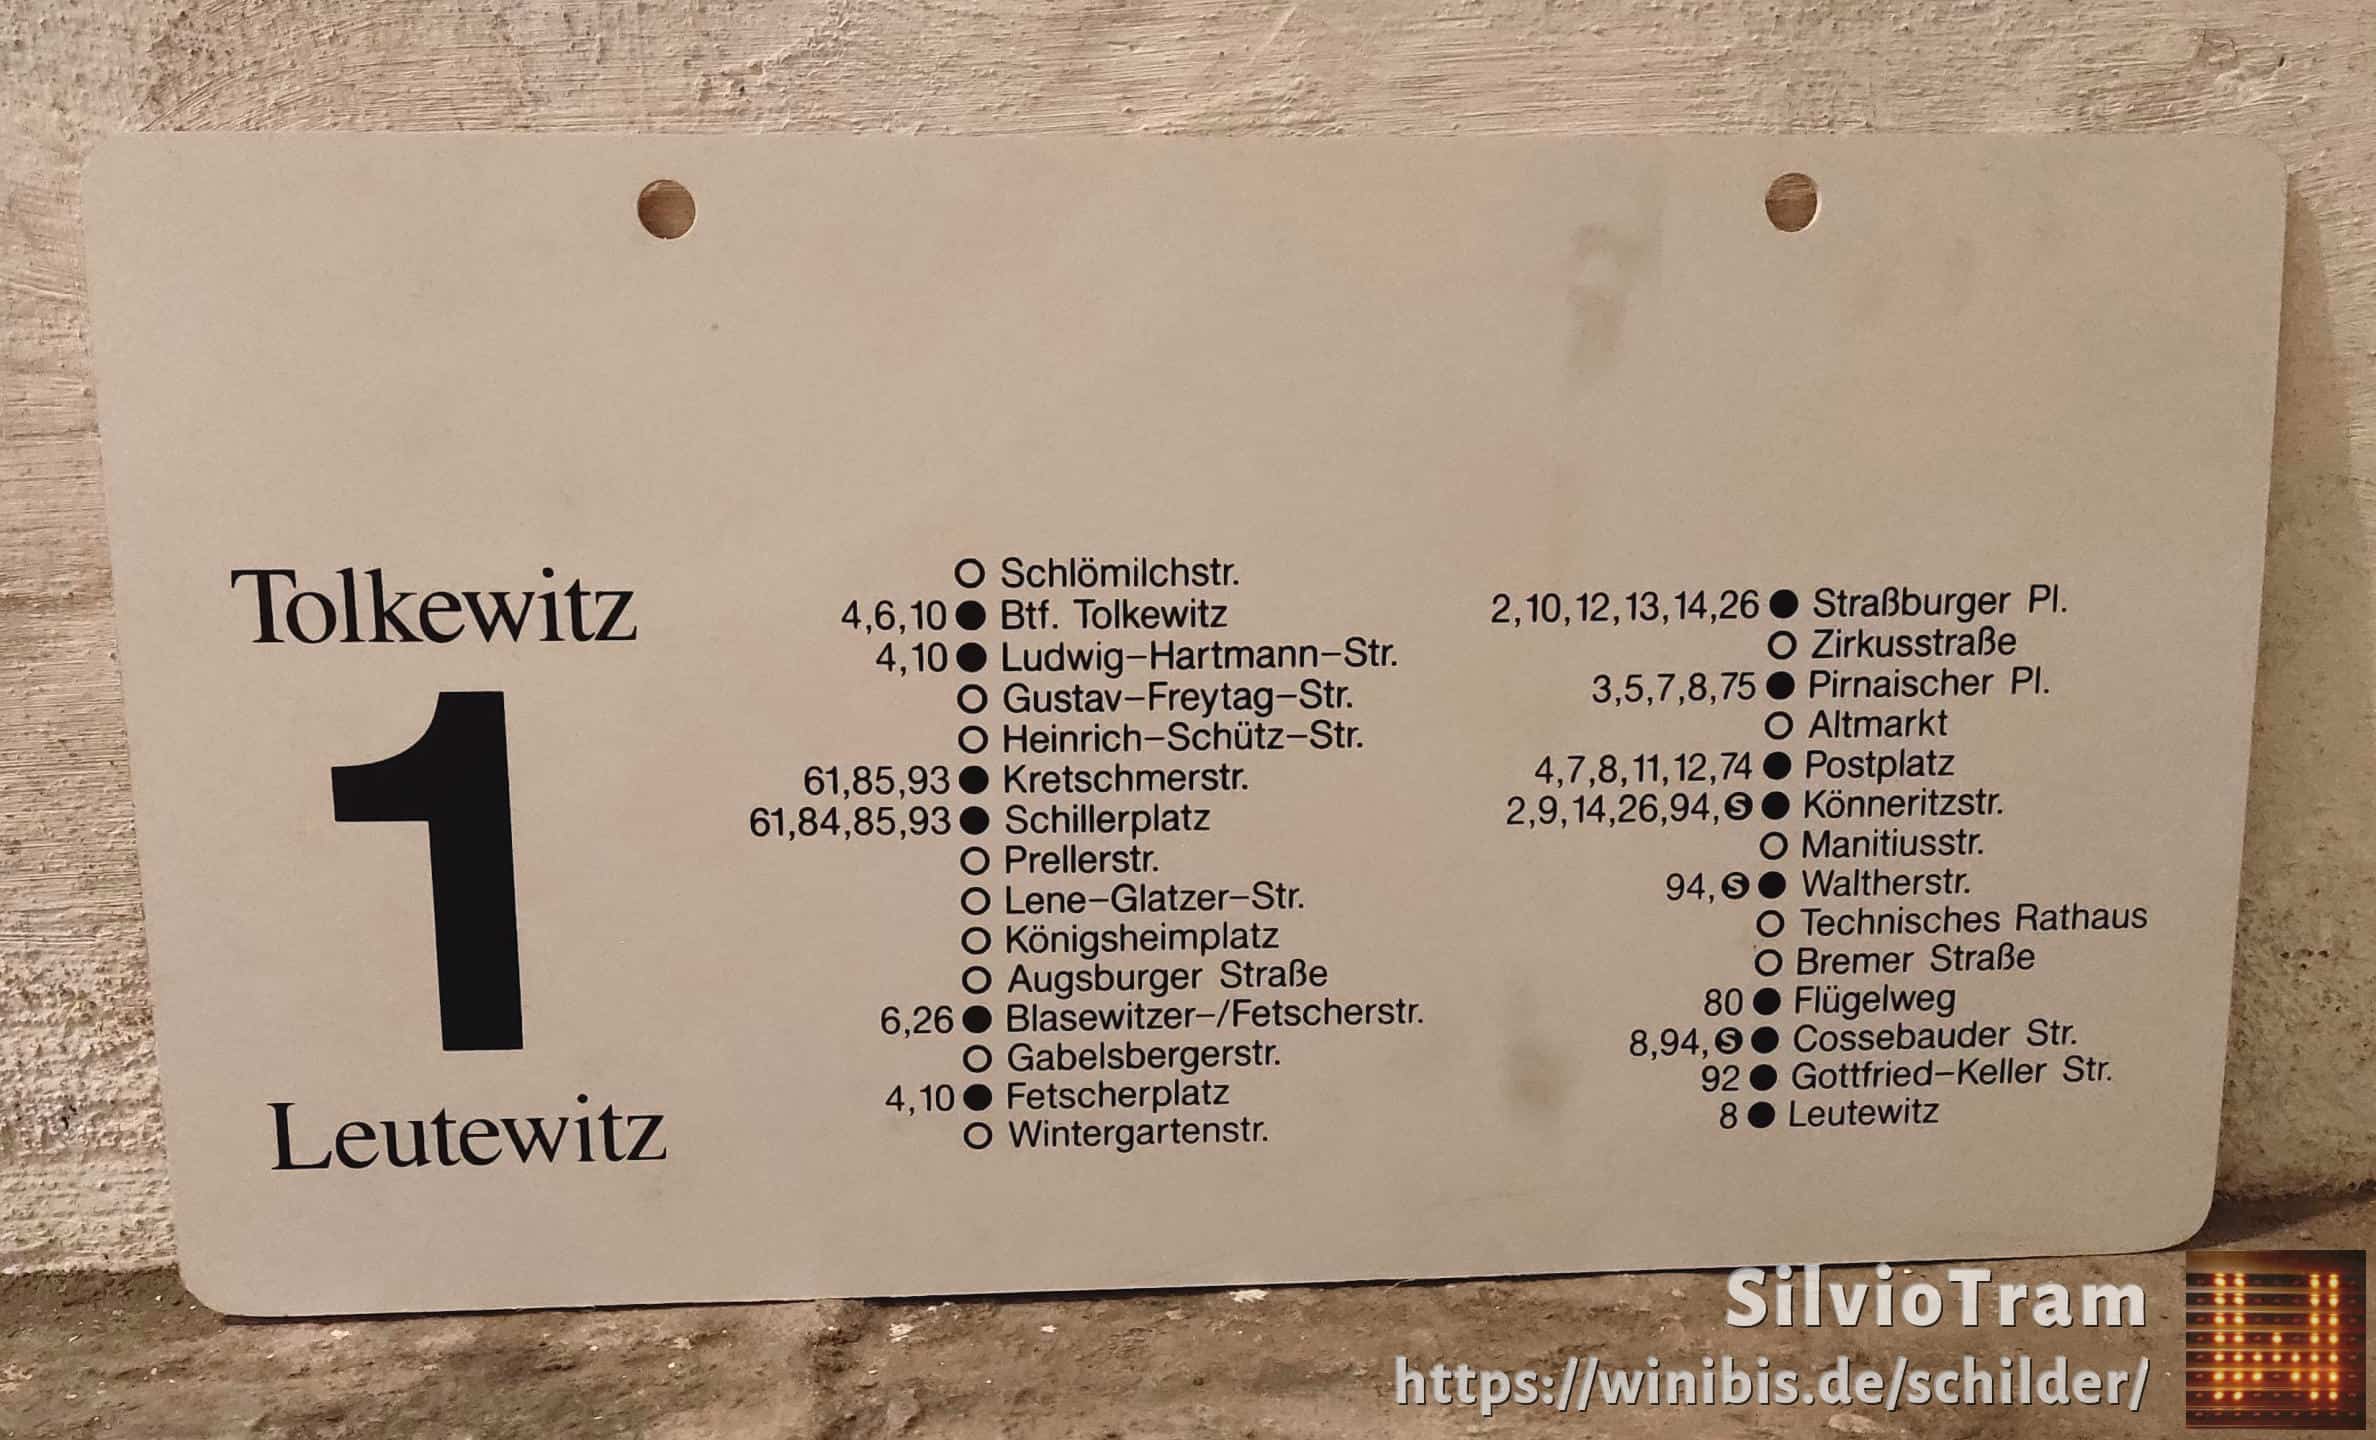 1 Tolkewitz – Leutewitz #2